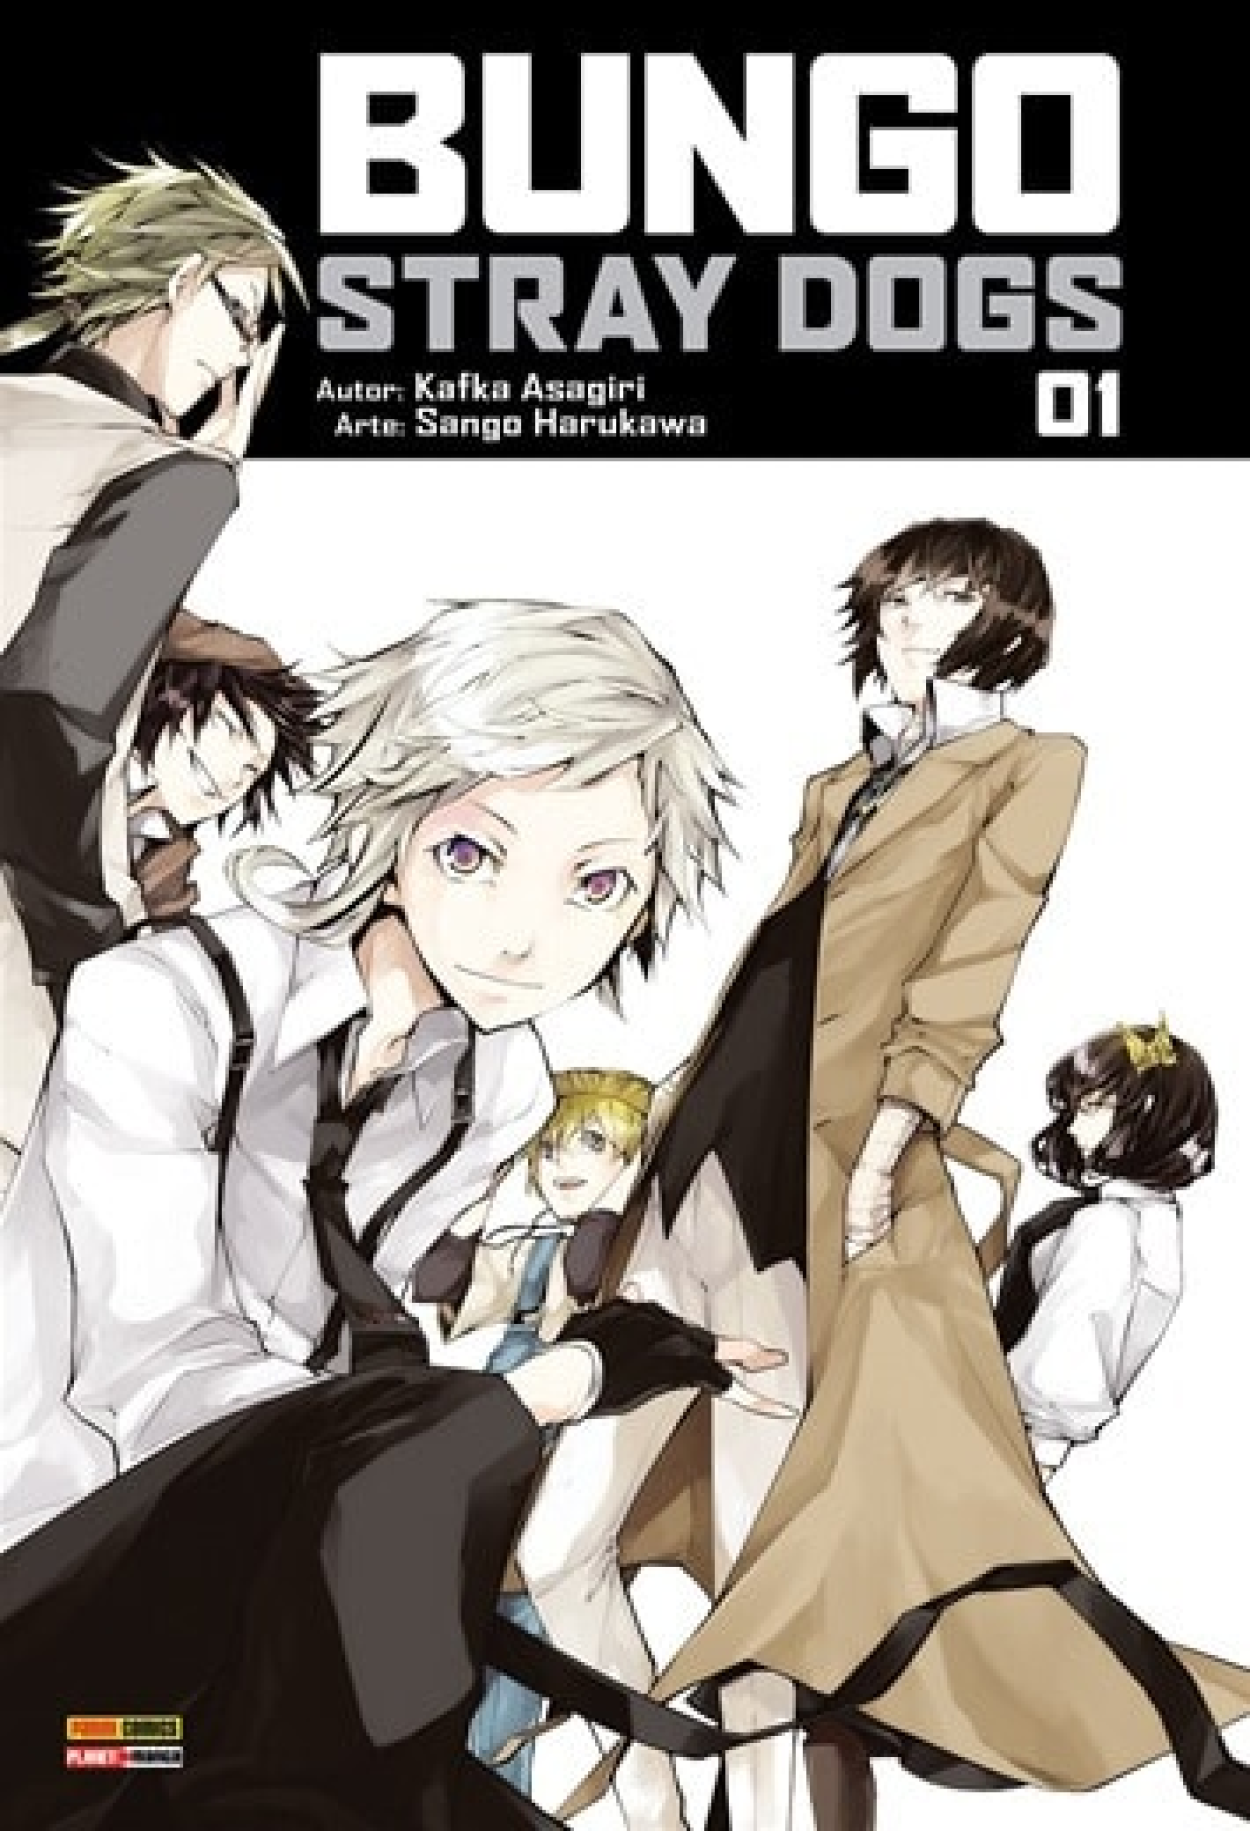 ANIME-se on X: Animes que estreiam hoje: - Bungou Stray Dogs